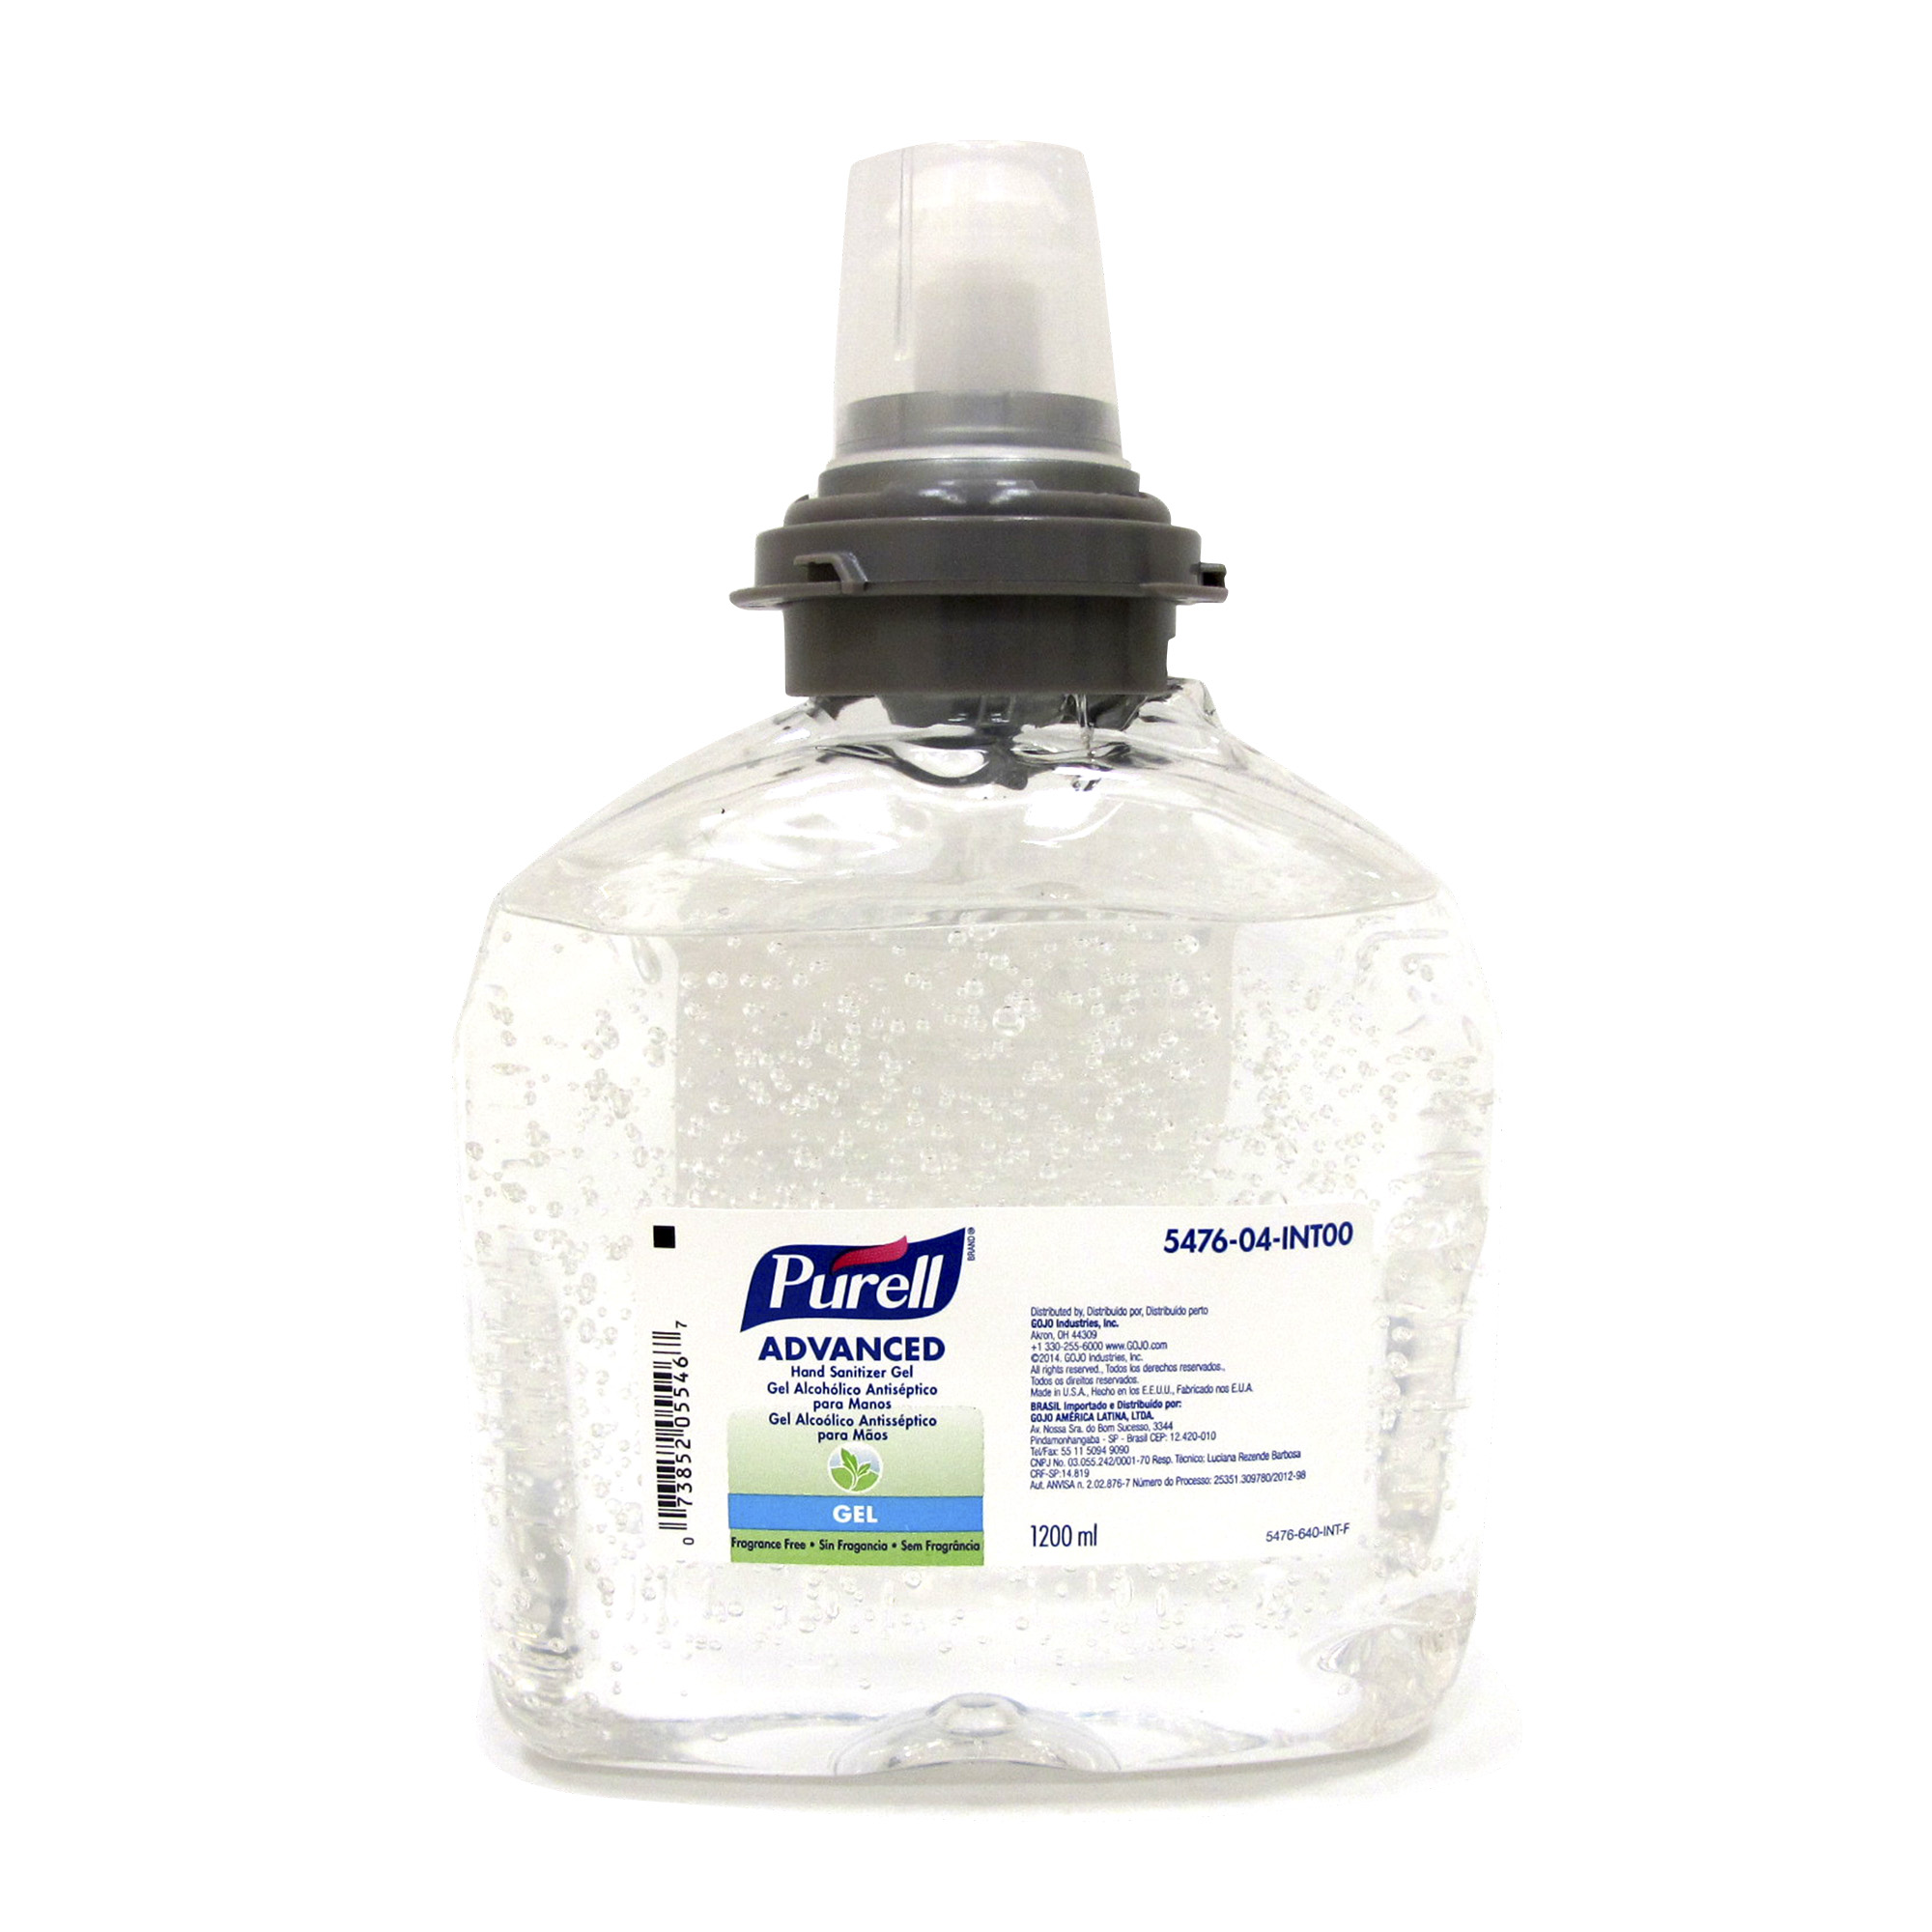 Purell 5476-04 Gel antibacterial para manos, caja con 2 cartuchos de 1200 ml cada uno